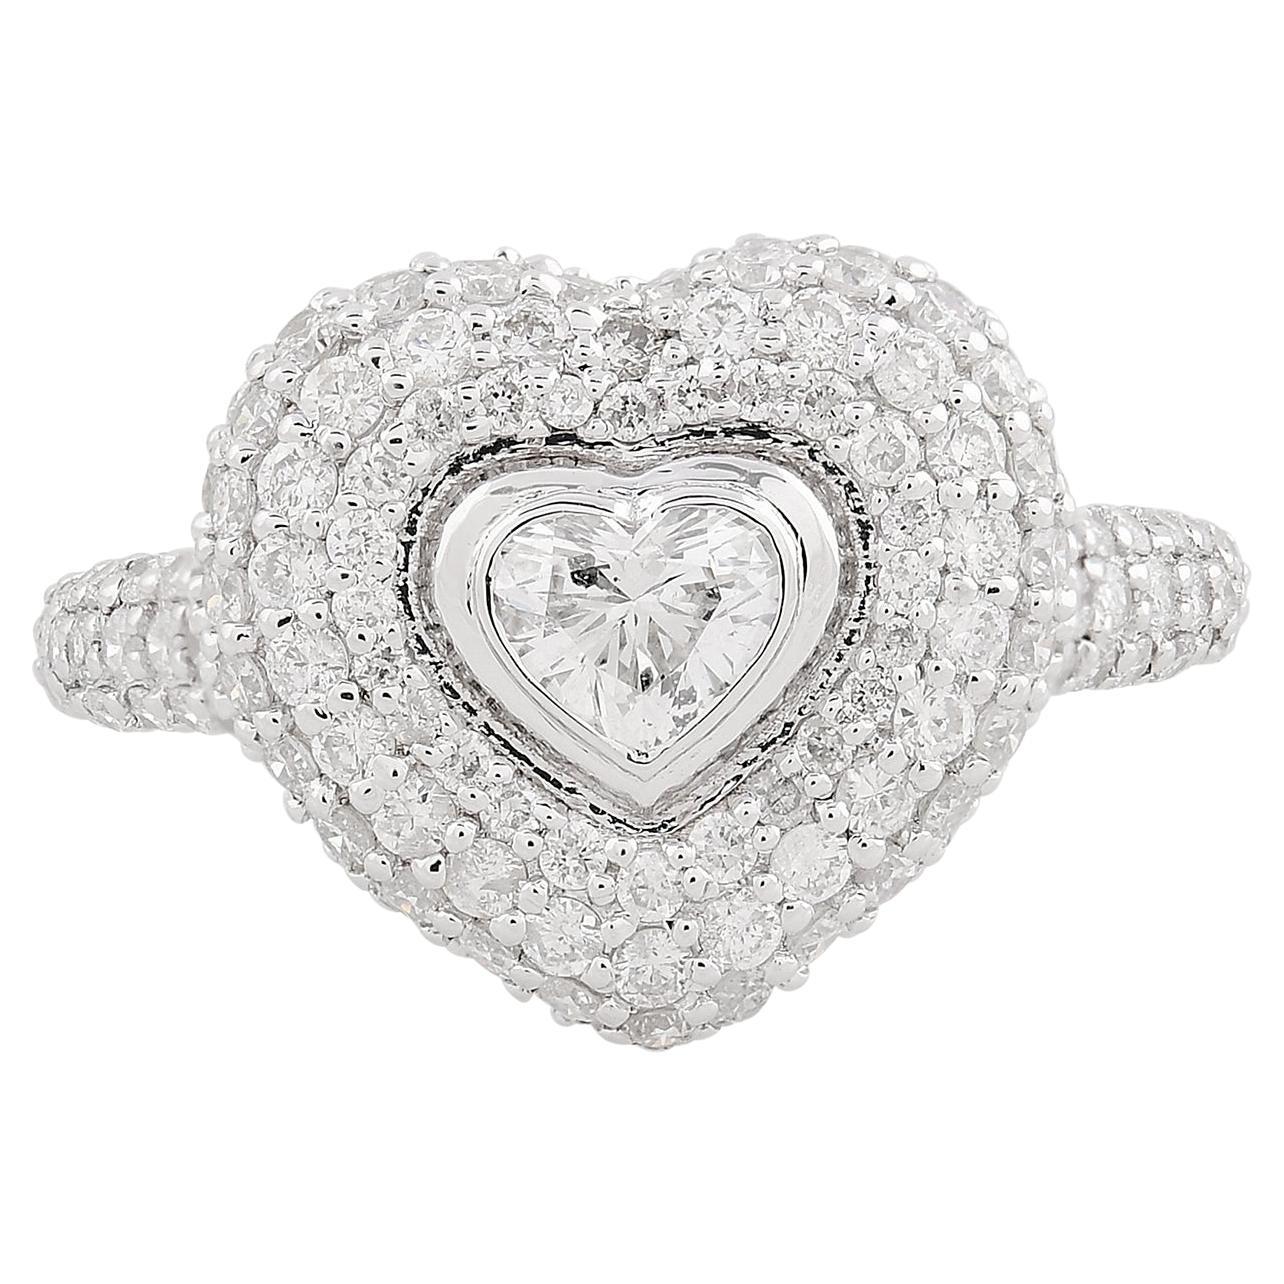 Bague avec diamant en forme de cœur de 1,69 carat, pureté SI, couleur HI, en or blanc 18 carats.